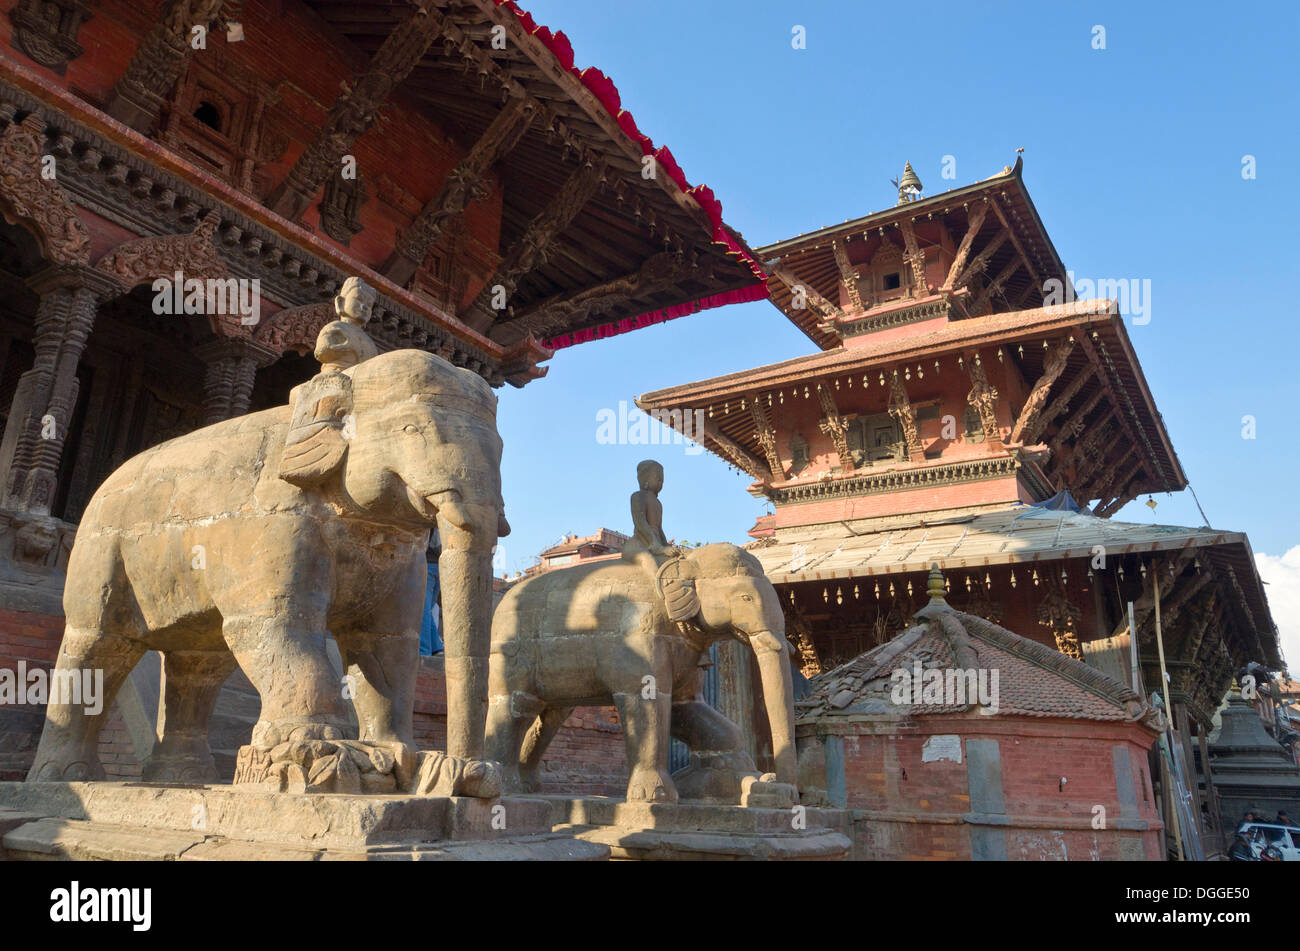 Stone guardian éléphants sur Patan Durbar Square, Patan, Lalitpur, District Zone Bagmati, Népal Banque D'Images